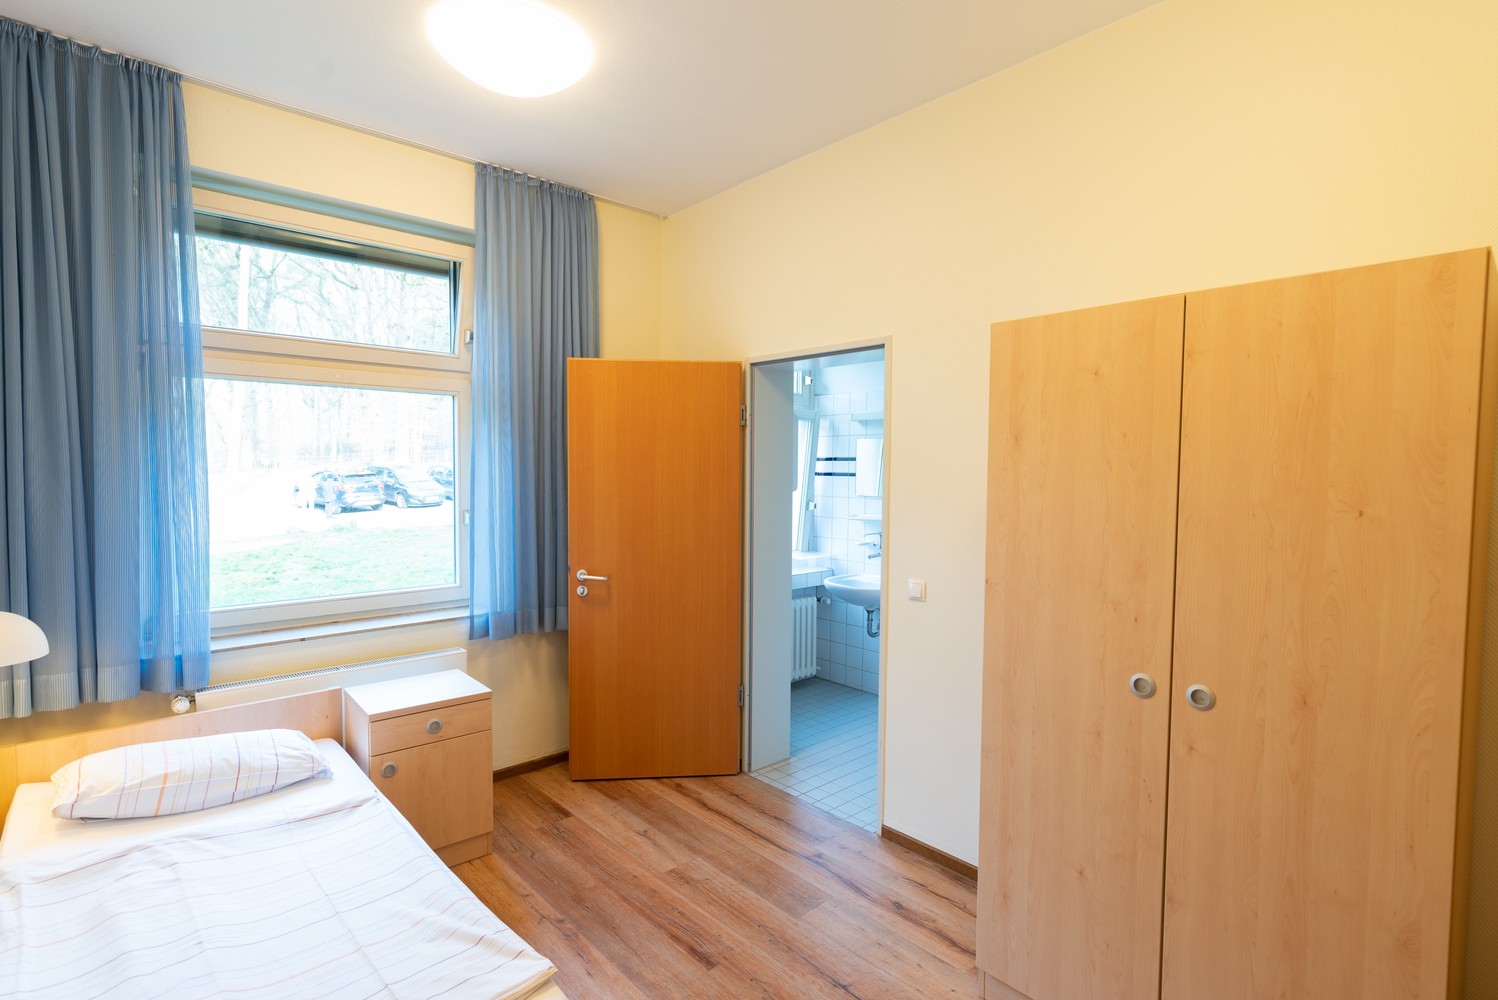 Das Bild zeigt ein Patientenzimmer, in dem unter anderem ein Bett und ein Schrank stehen.